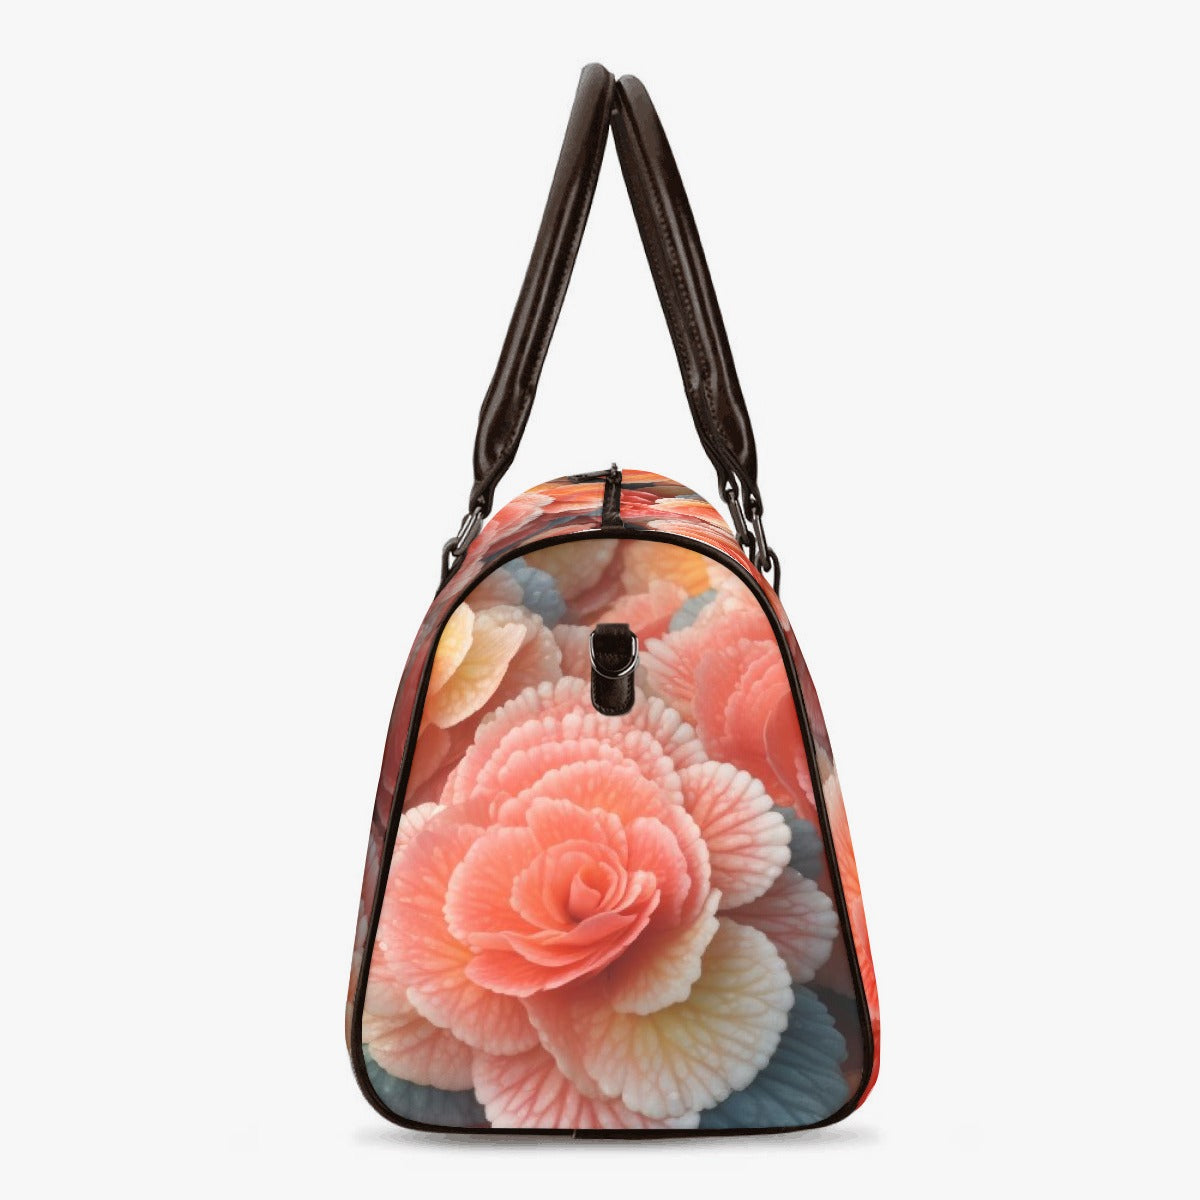 Blushing Floral Duffle Bag